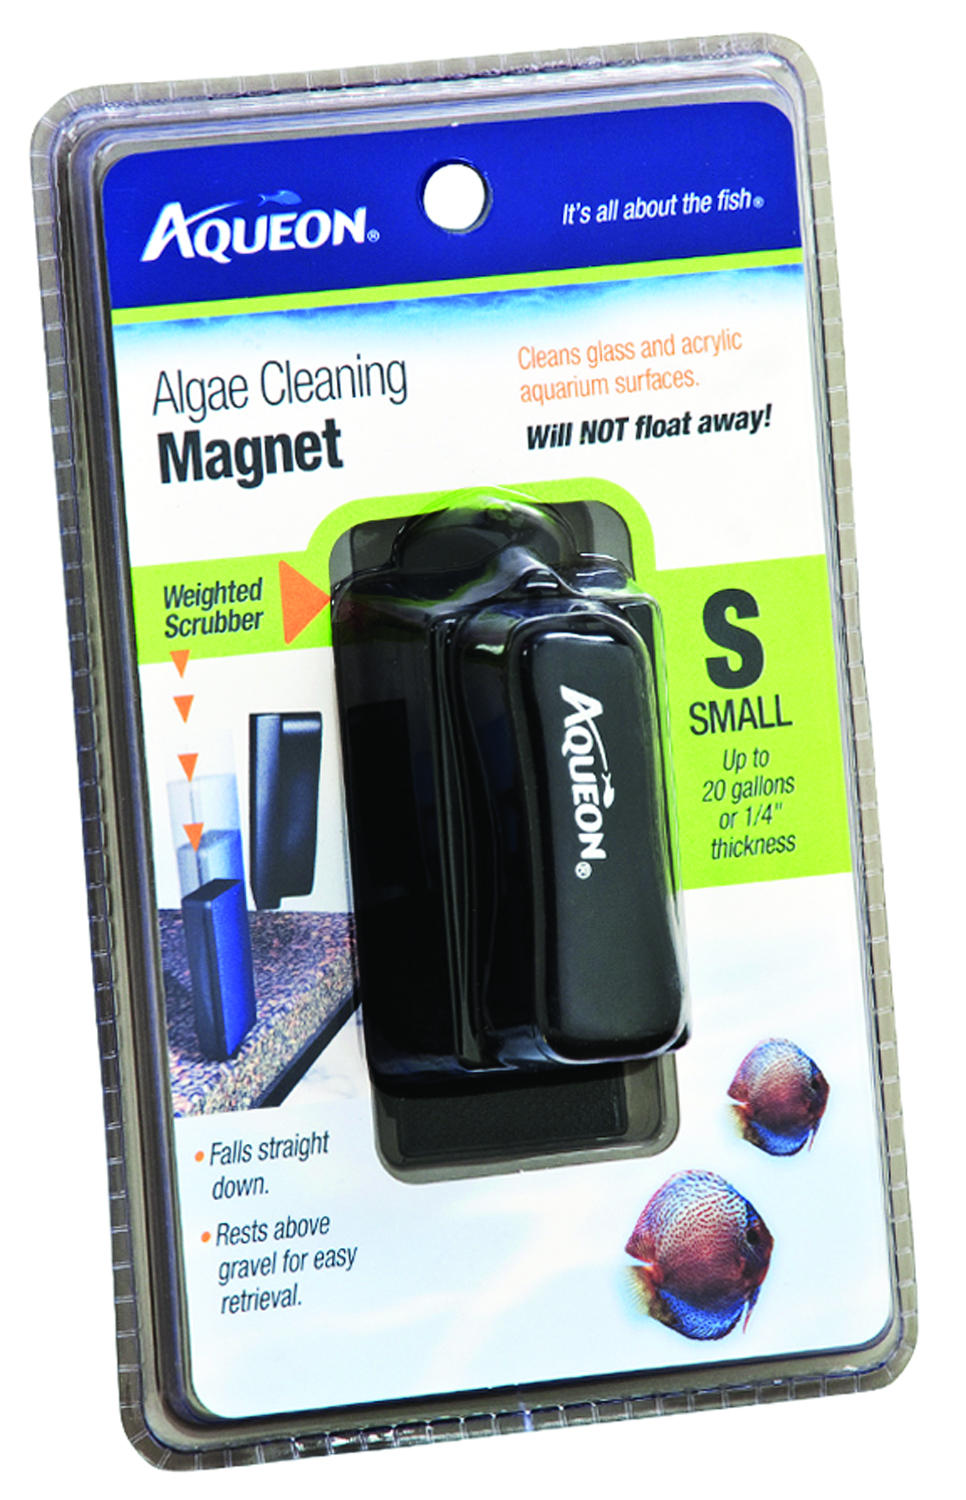 AQUEON ALGAE CLEANING MAGNET